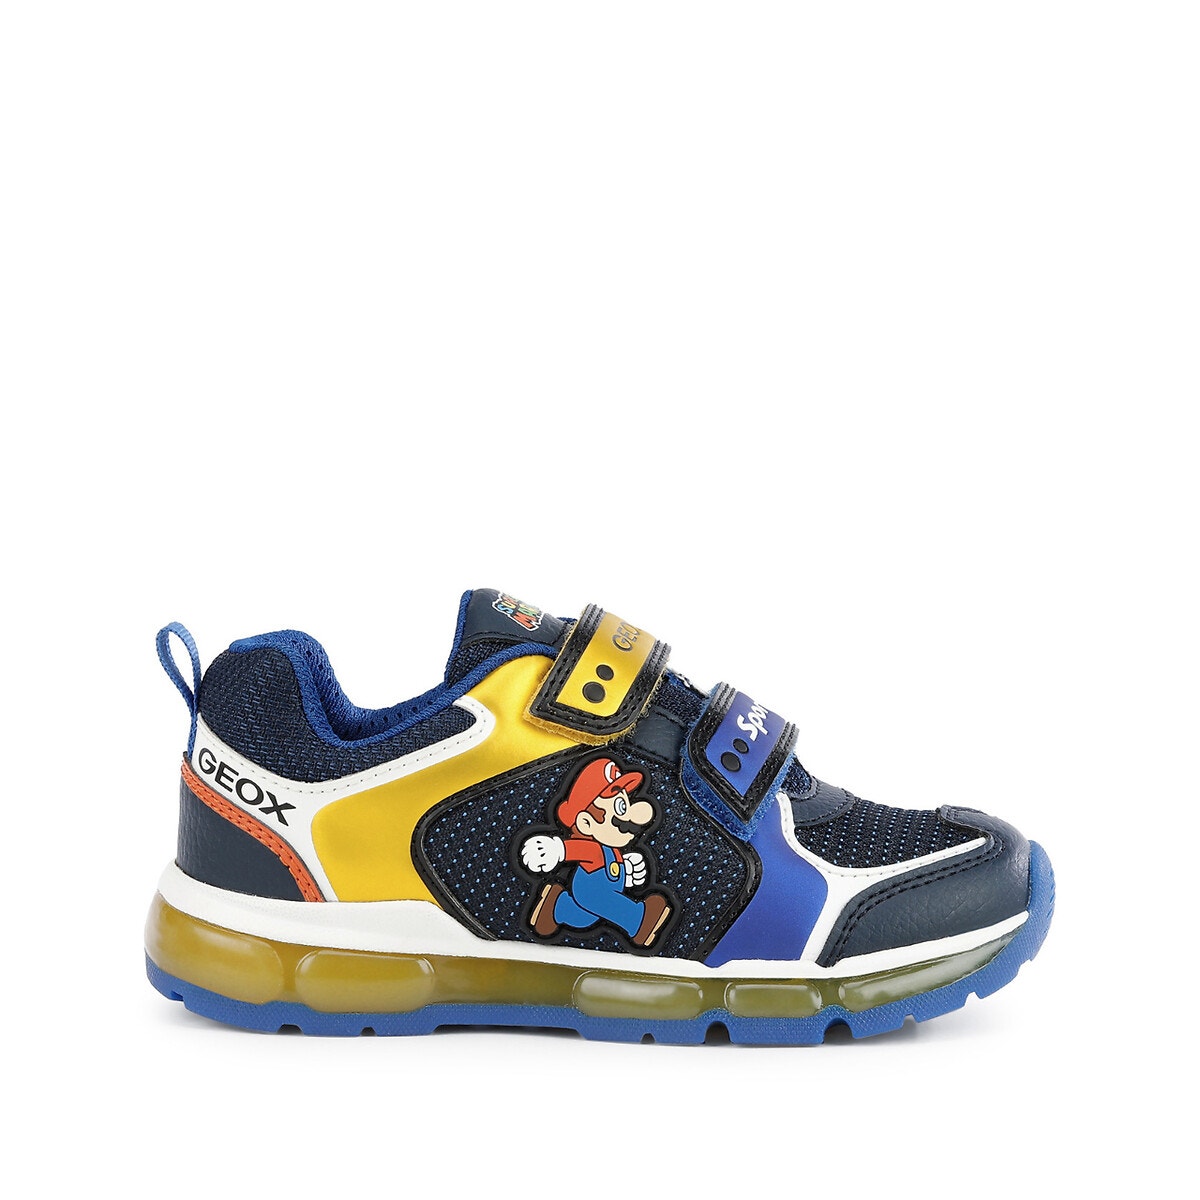 Αθλητικά παπούτσια, Android x Mario